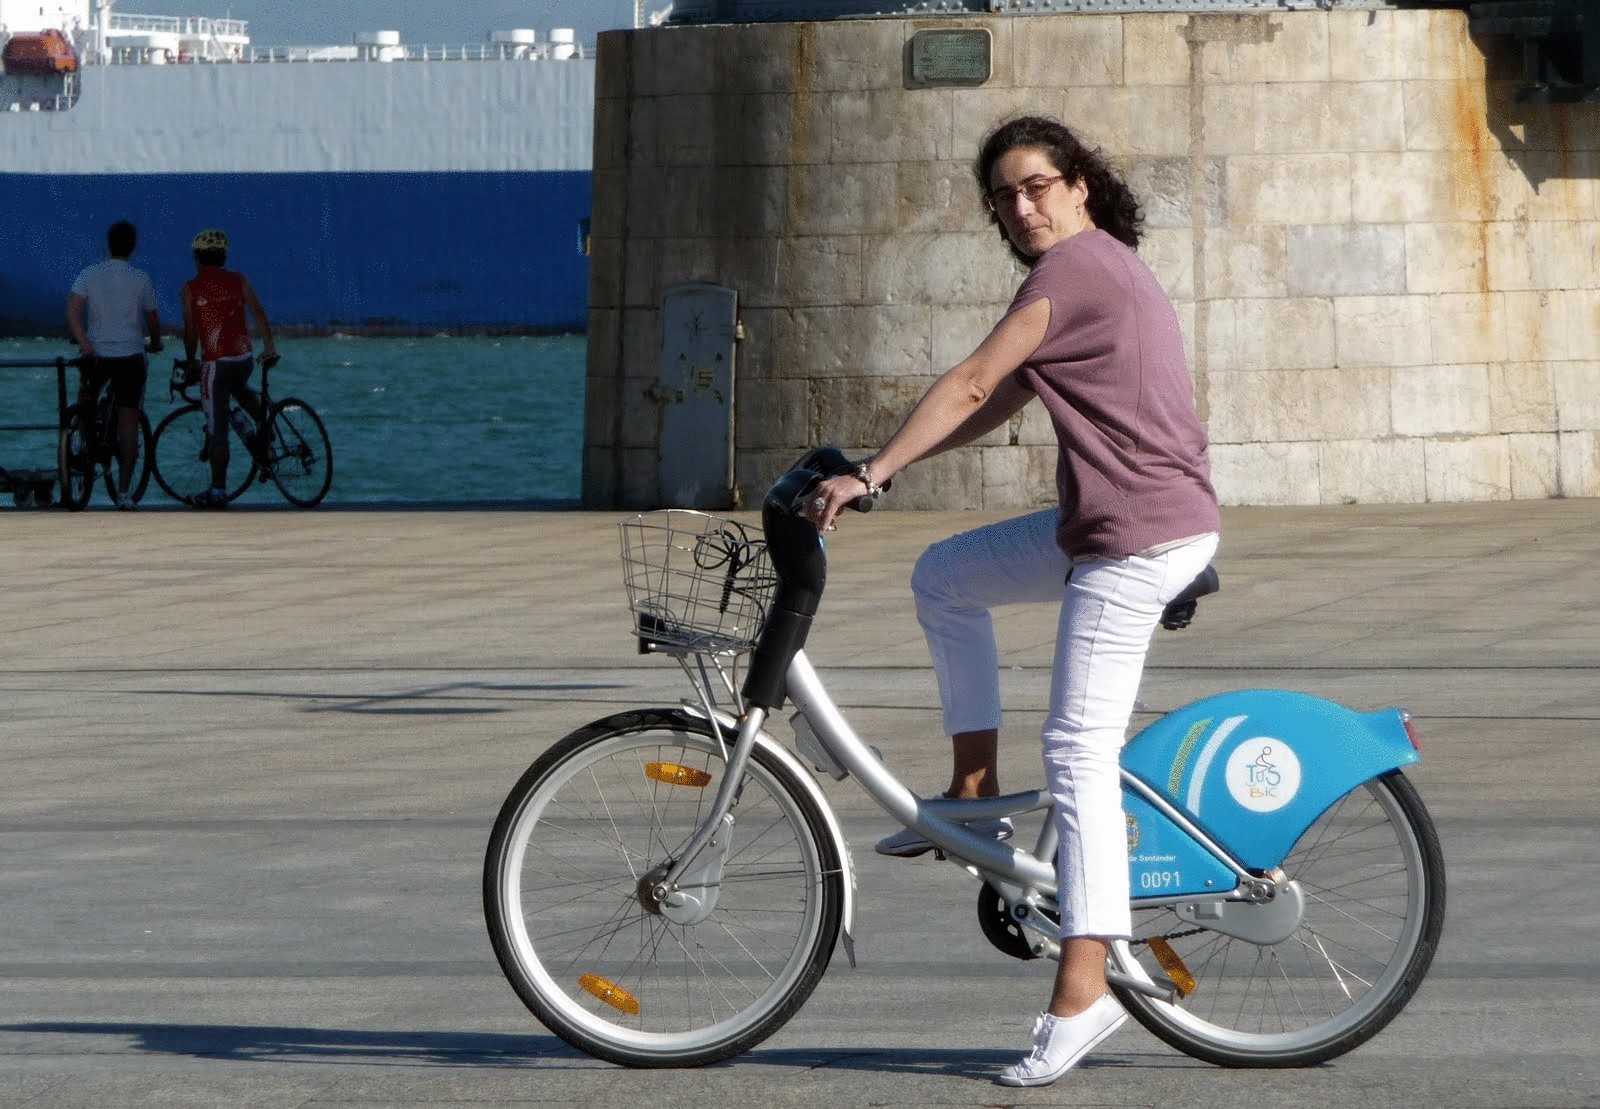 Жители Мадрида пересаживаются на велосипеды